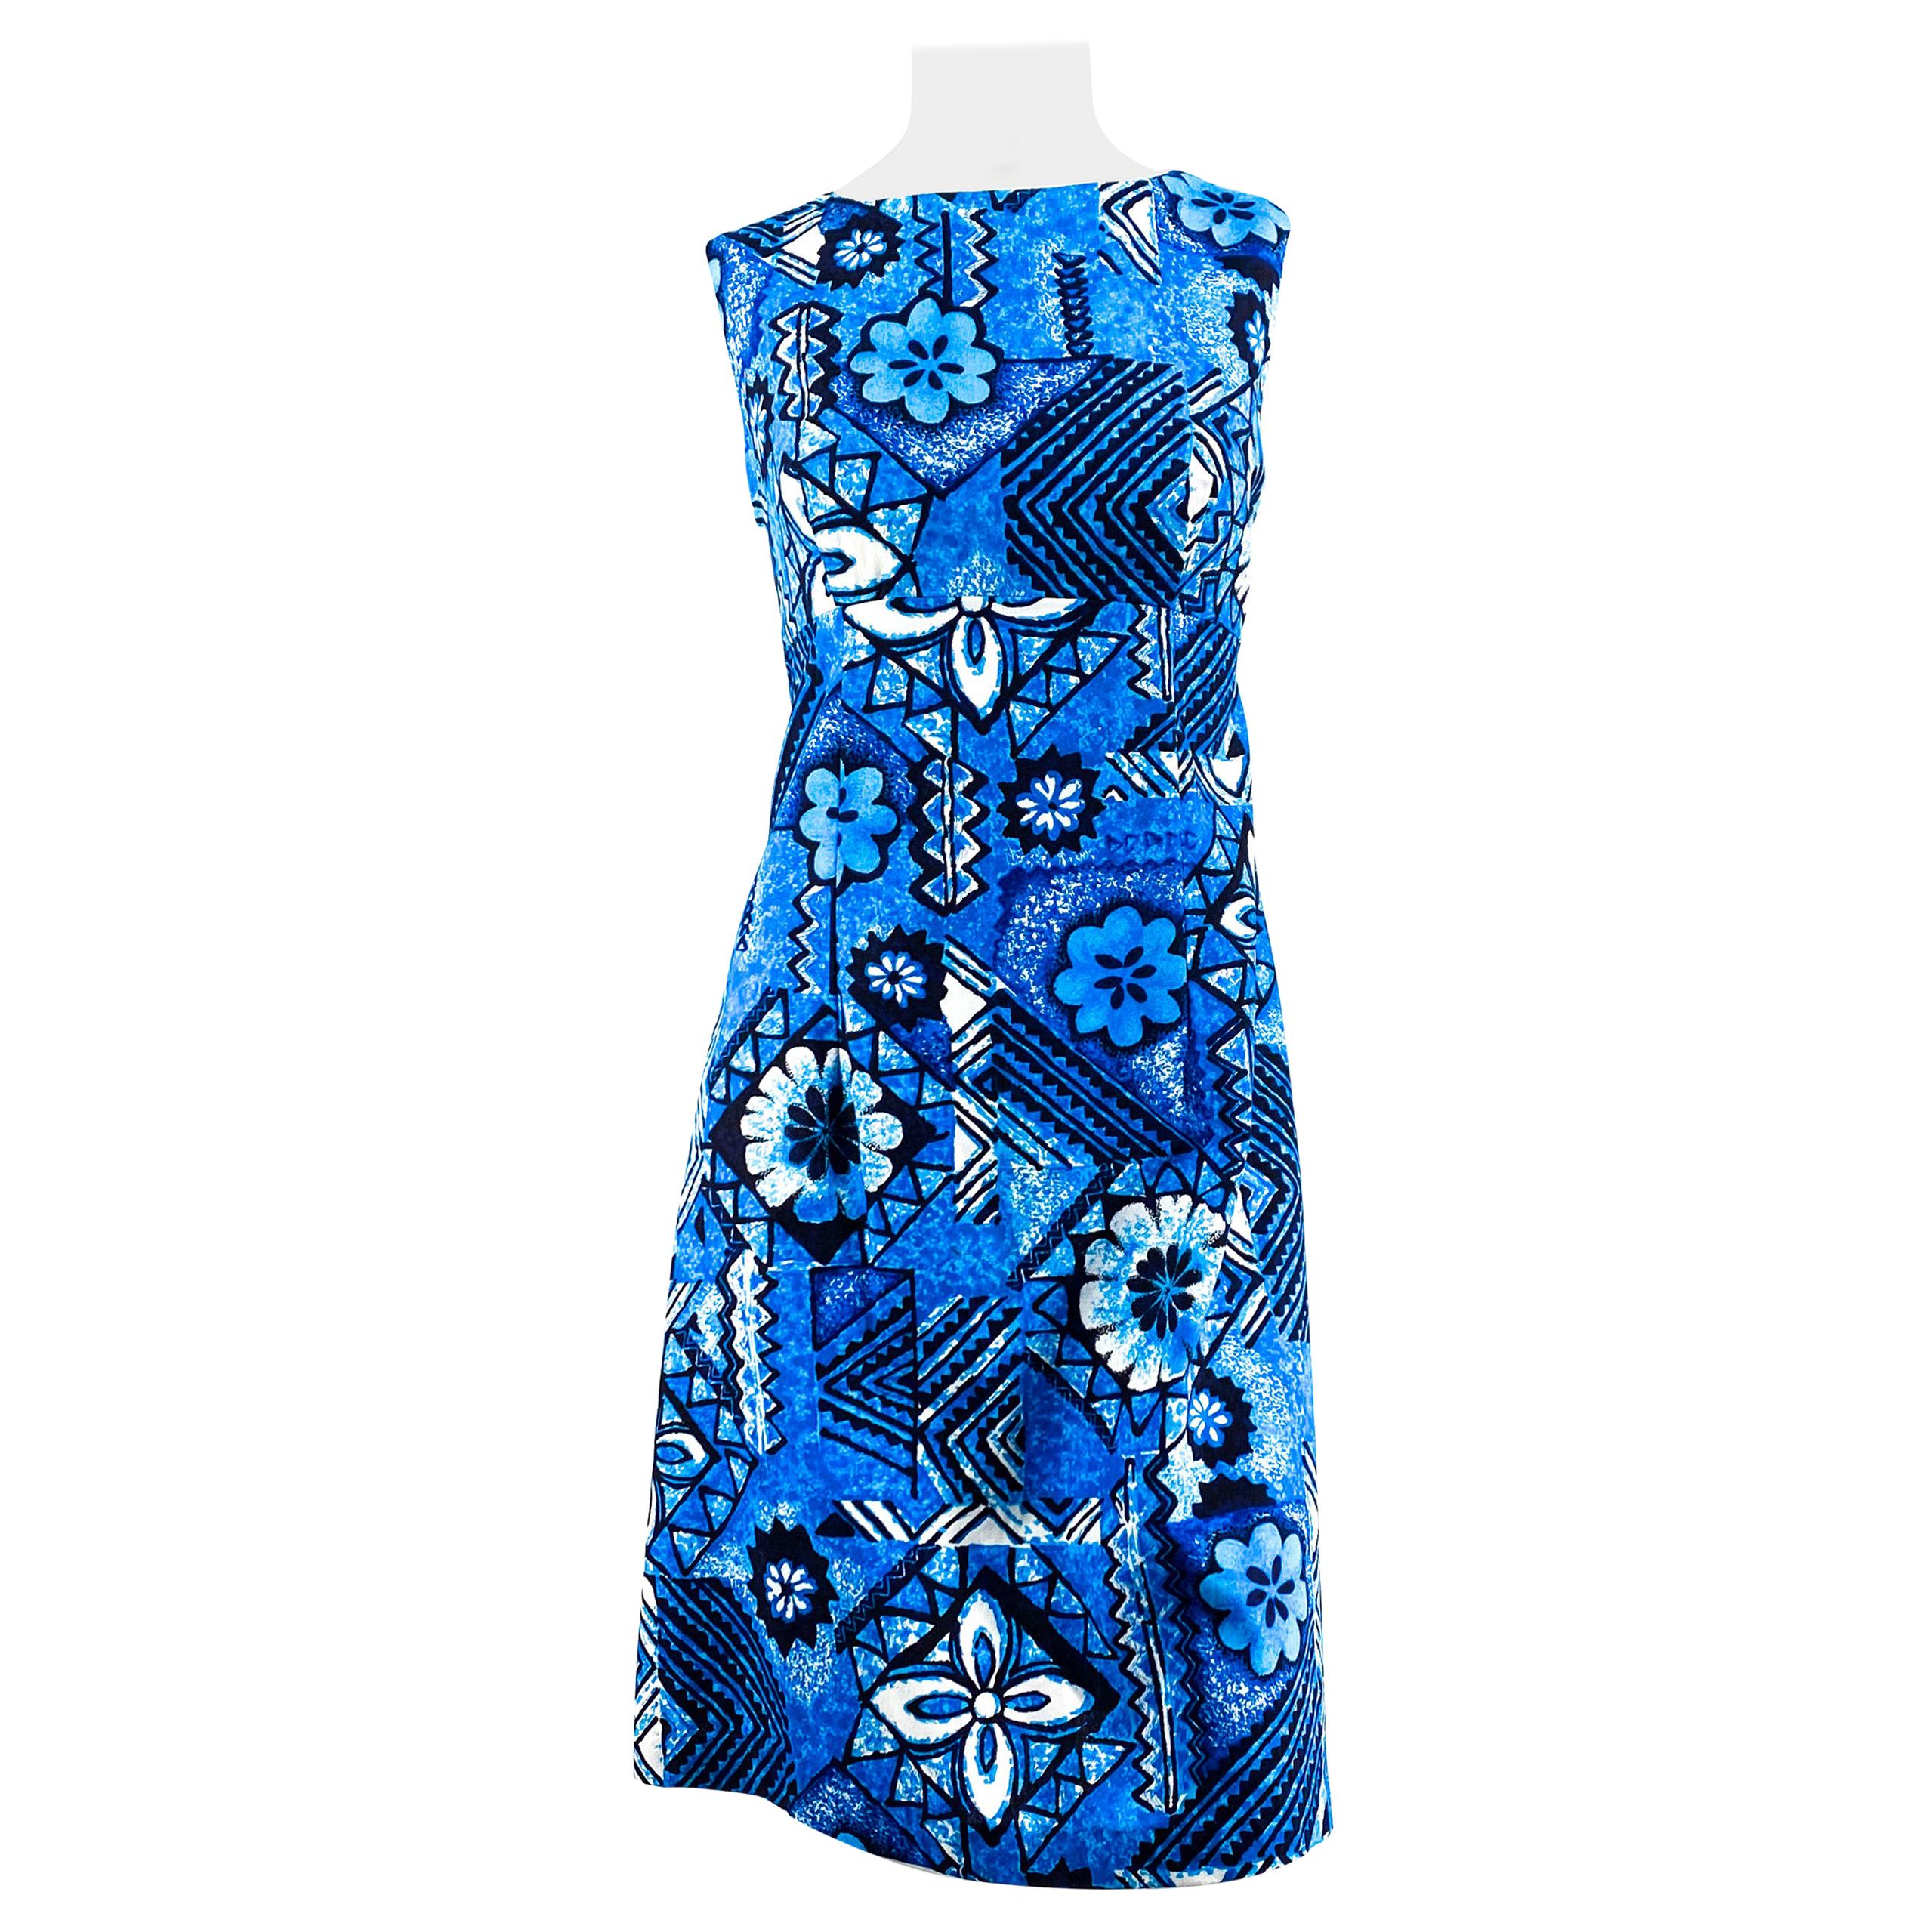 1960s Hawaiian/Geometric Printed Dress For Sale